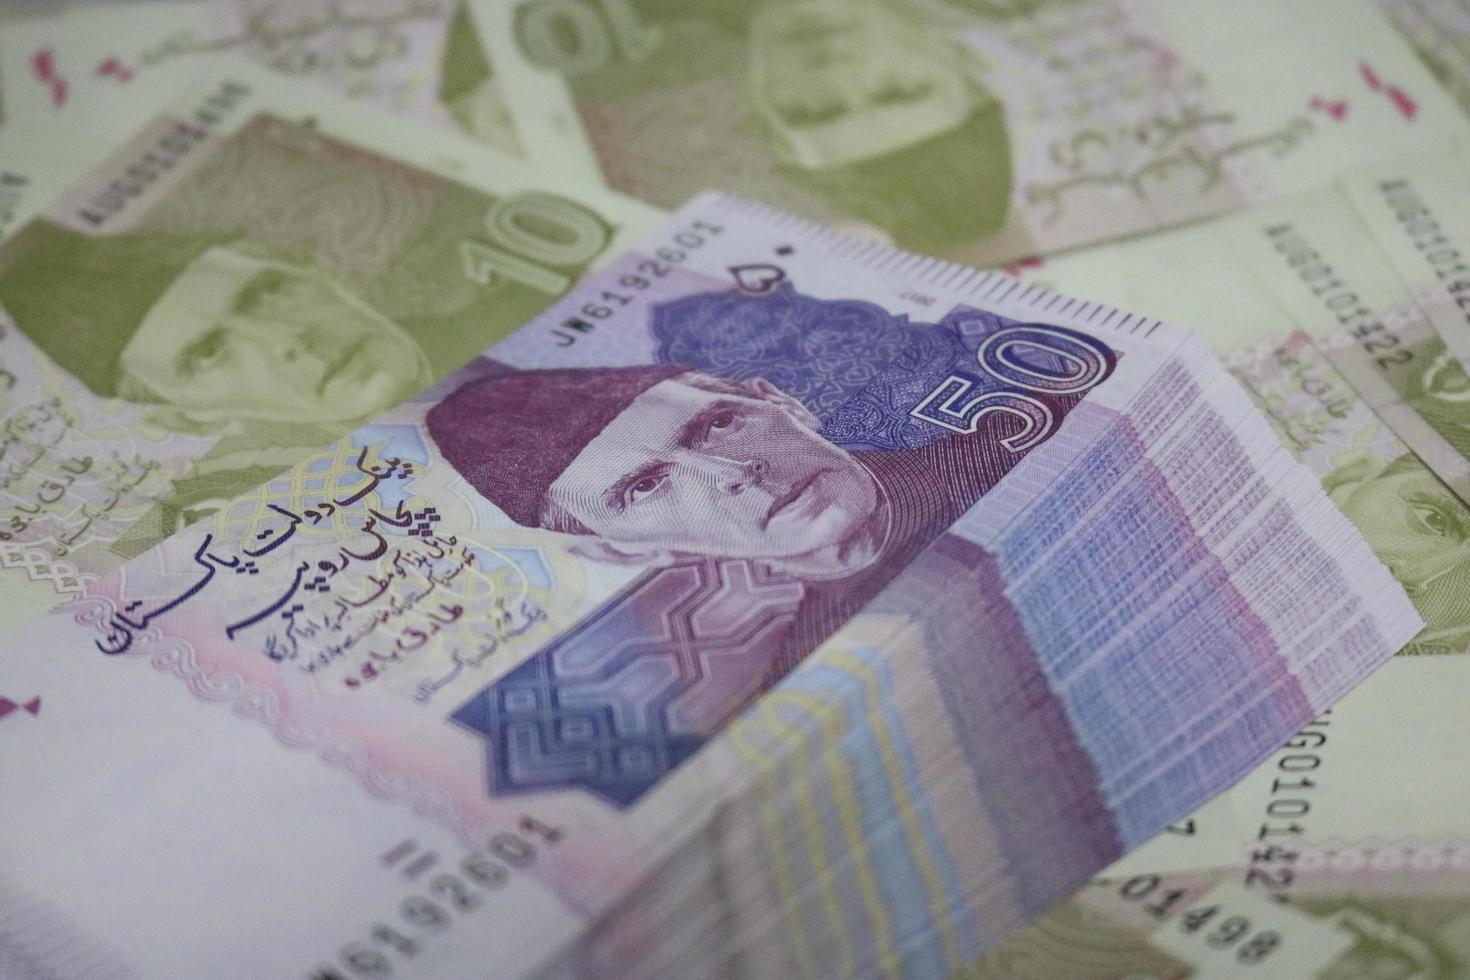 Pakistani currency mix note bundle photo